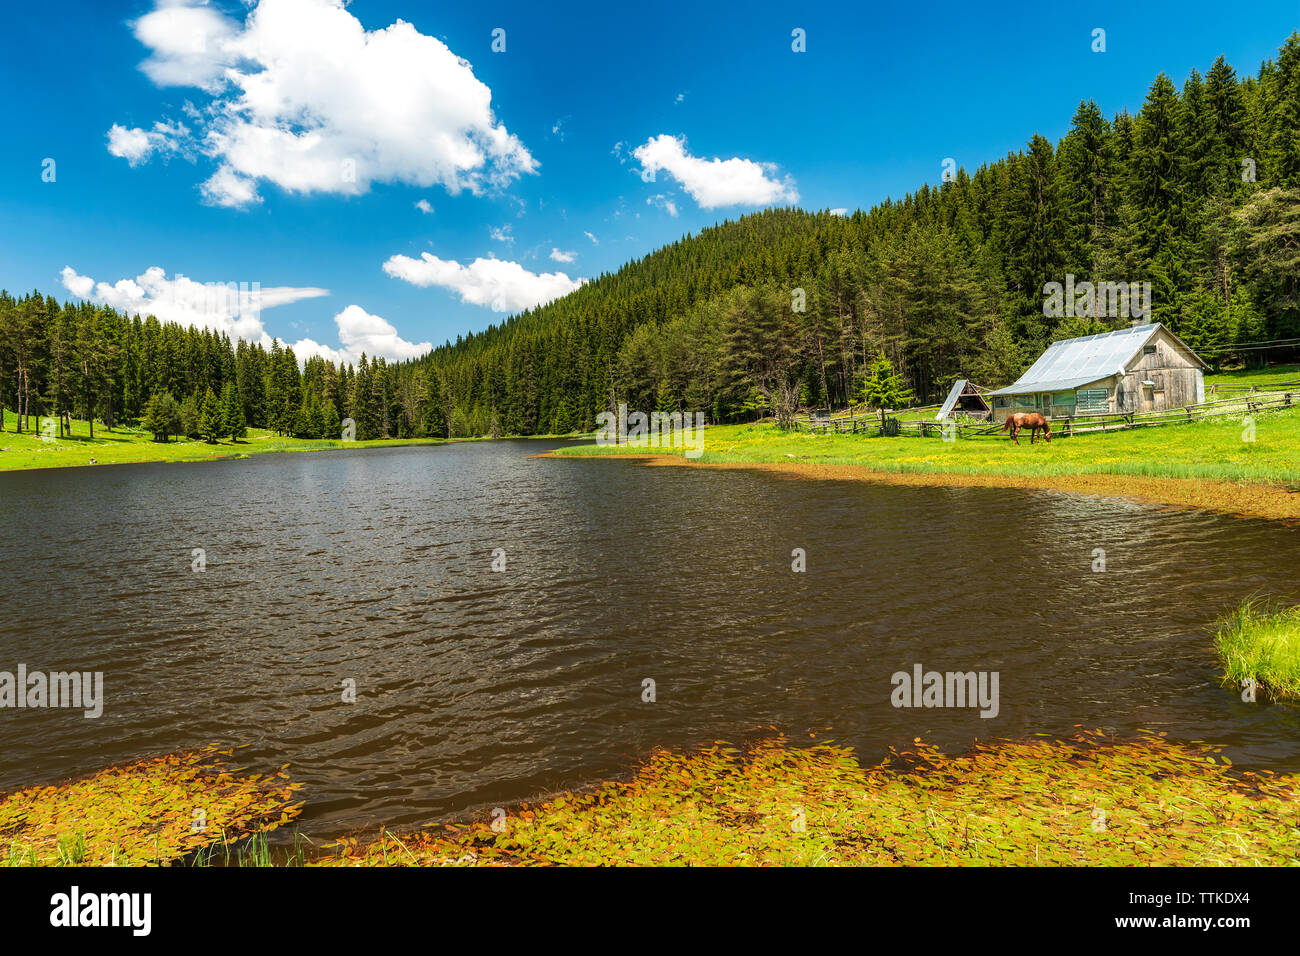 Verano en la montaña, el lago y la casa de madera escena rural Foto de stock